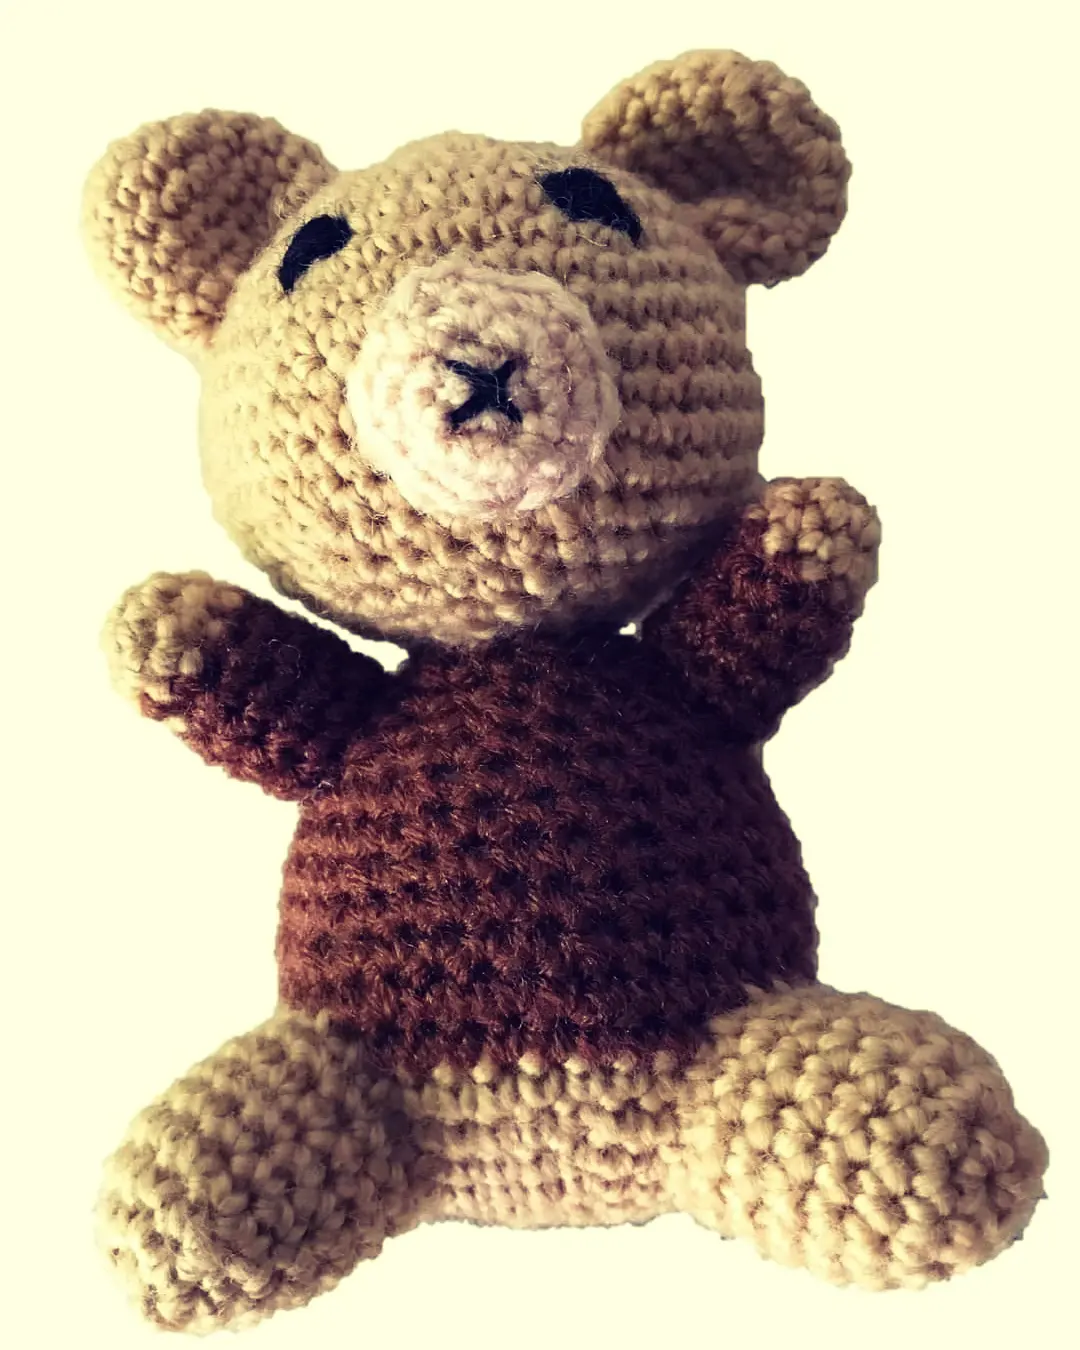 Lyfgoods Crochet Teddy Bear(5") uploaded by business on 3/7/2022